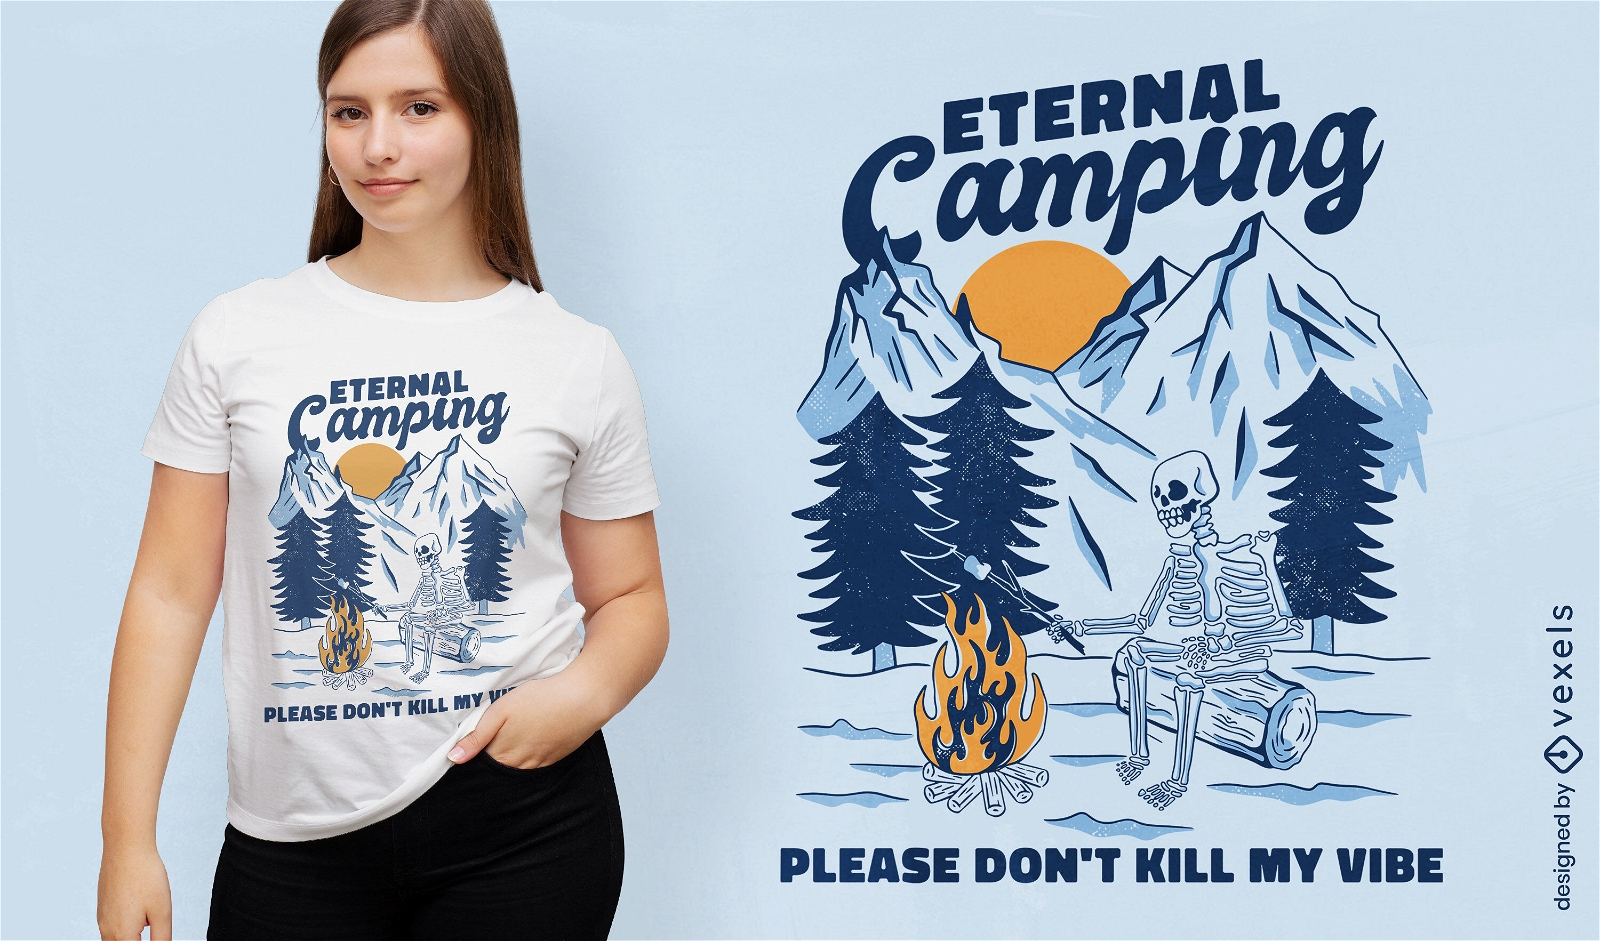 Skeleton camping in mountains t-shirt design